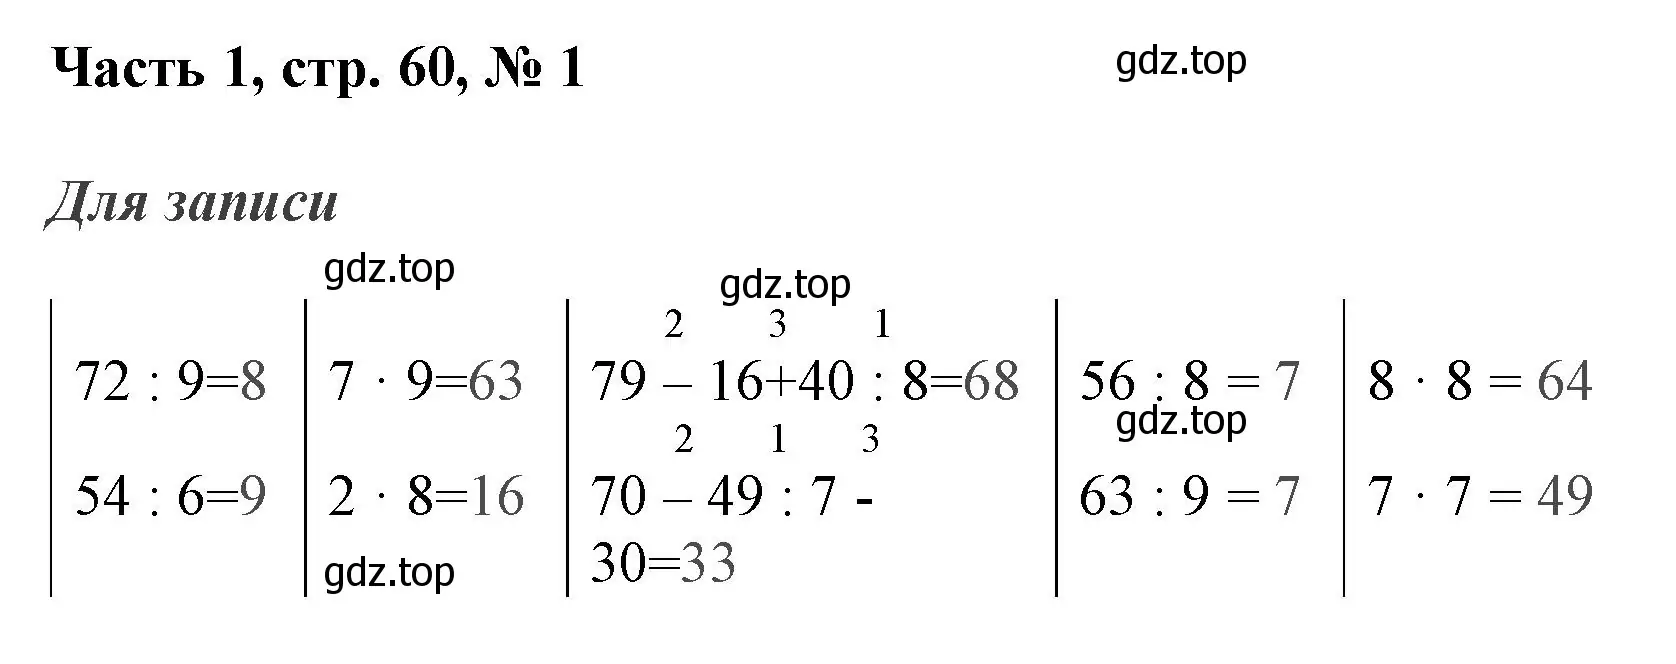 Решение номер 1 (страница 60) гдз по математике 3 класс Моро, Бантова, учебник 1 часть